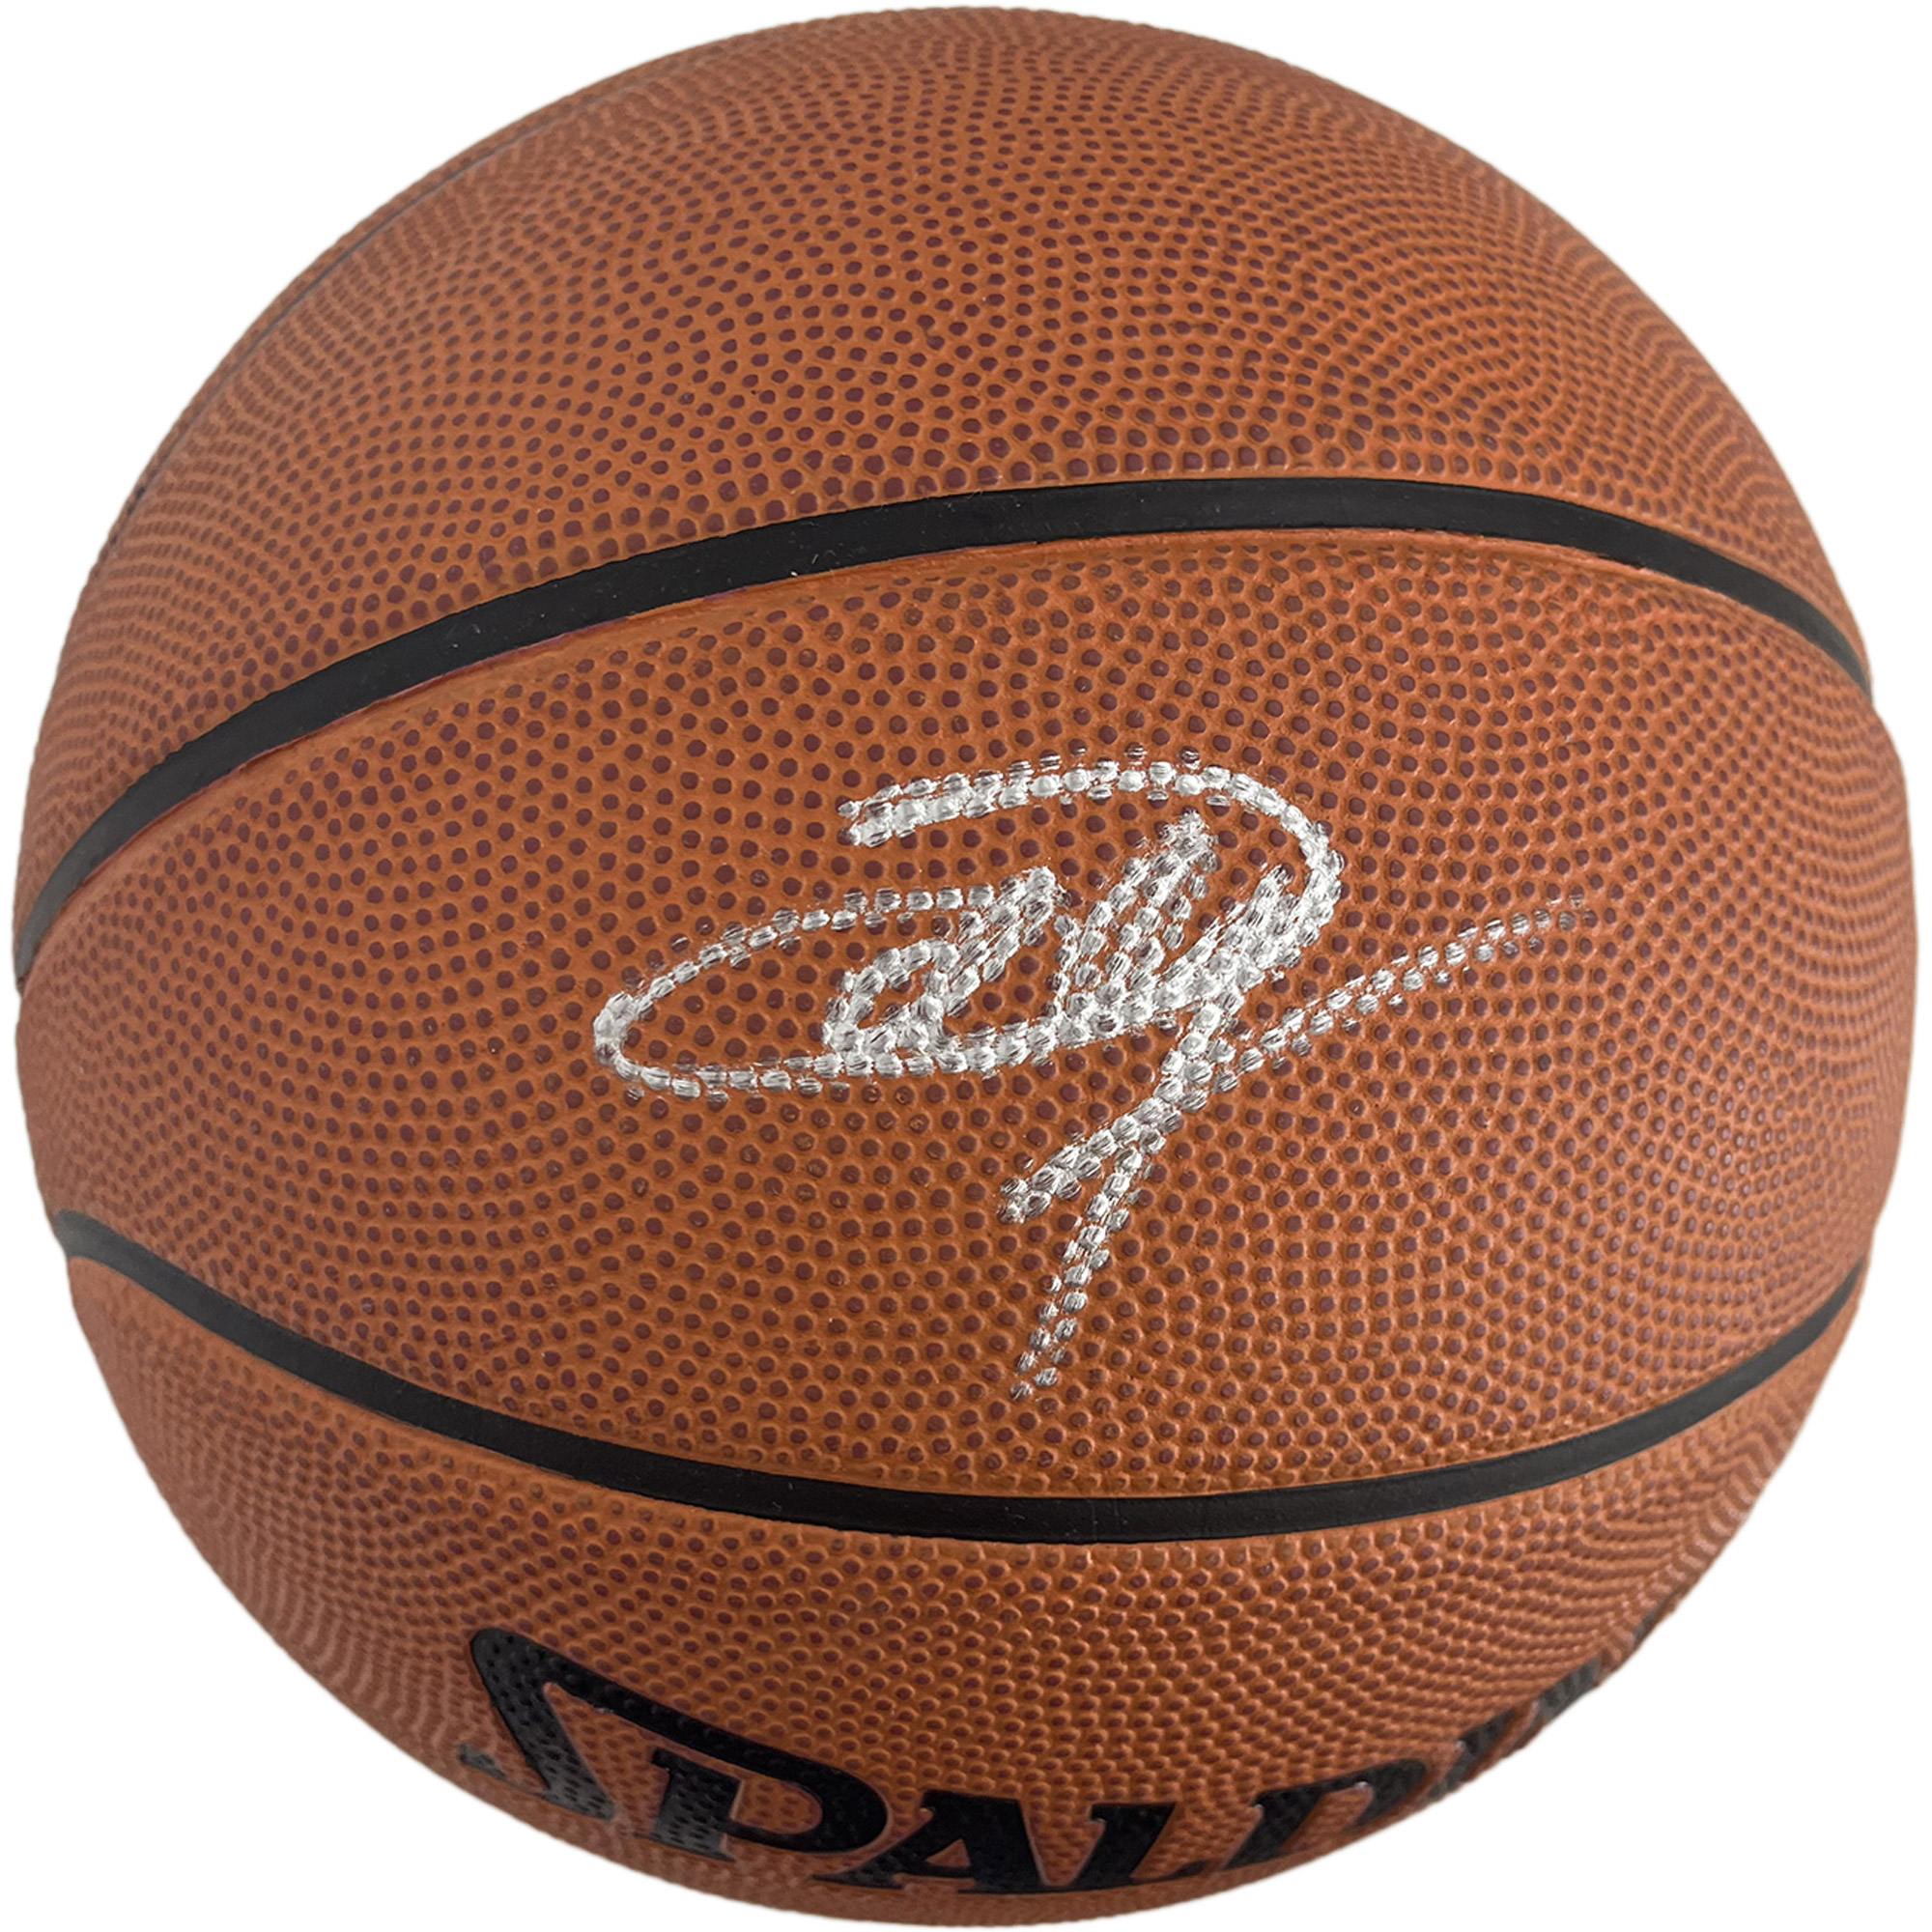 Basketball – Joel Embiid Hand Signed Basketball (JSA COA)